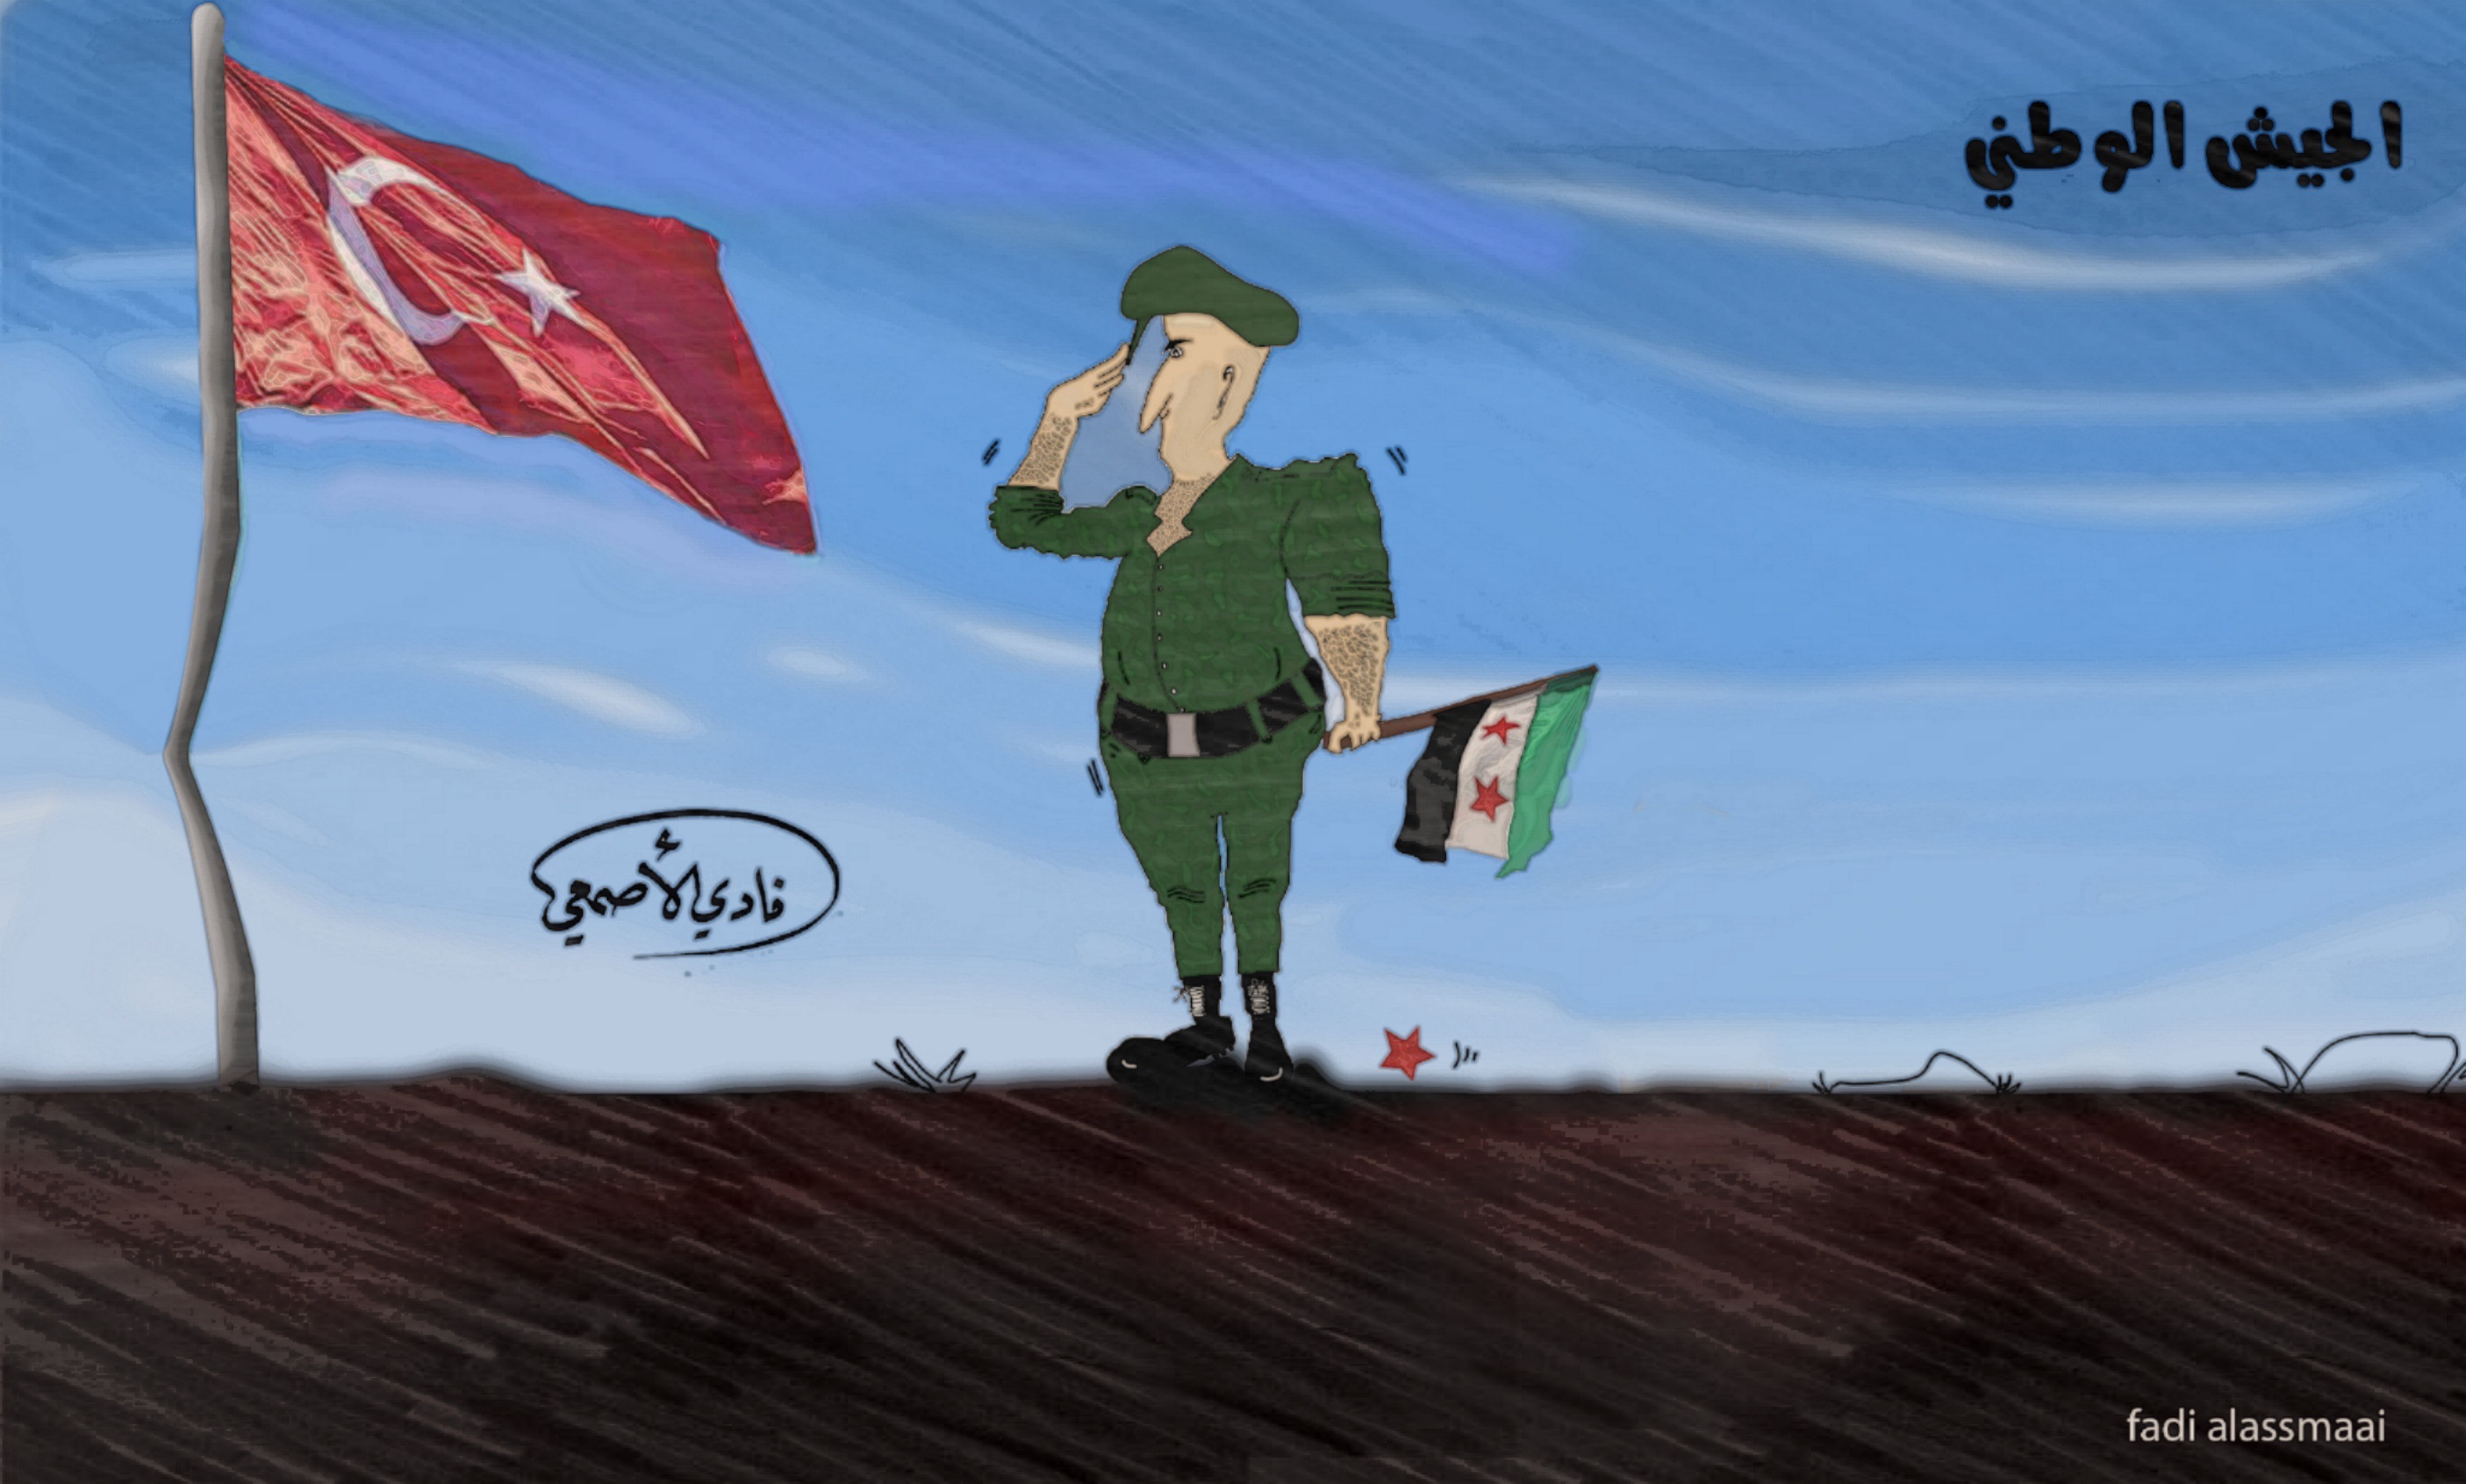 لوحة كاريكاتير ل فادي الأصمعي بعنوان" الجيش الوطني" (خاص السوري اليوم)